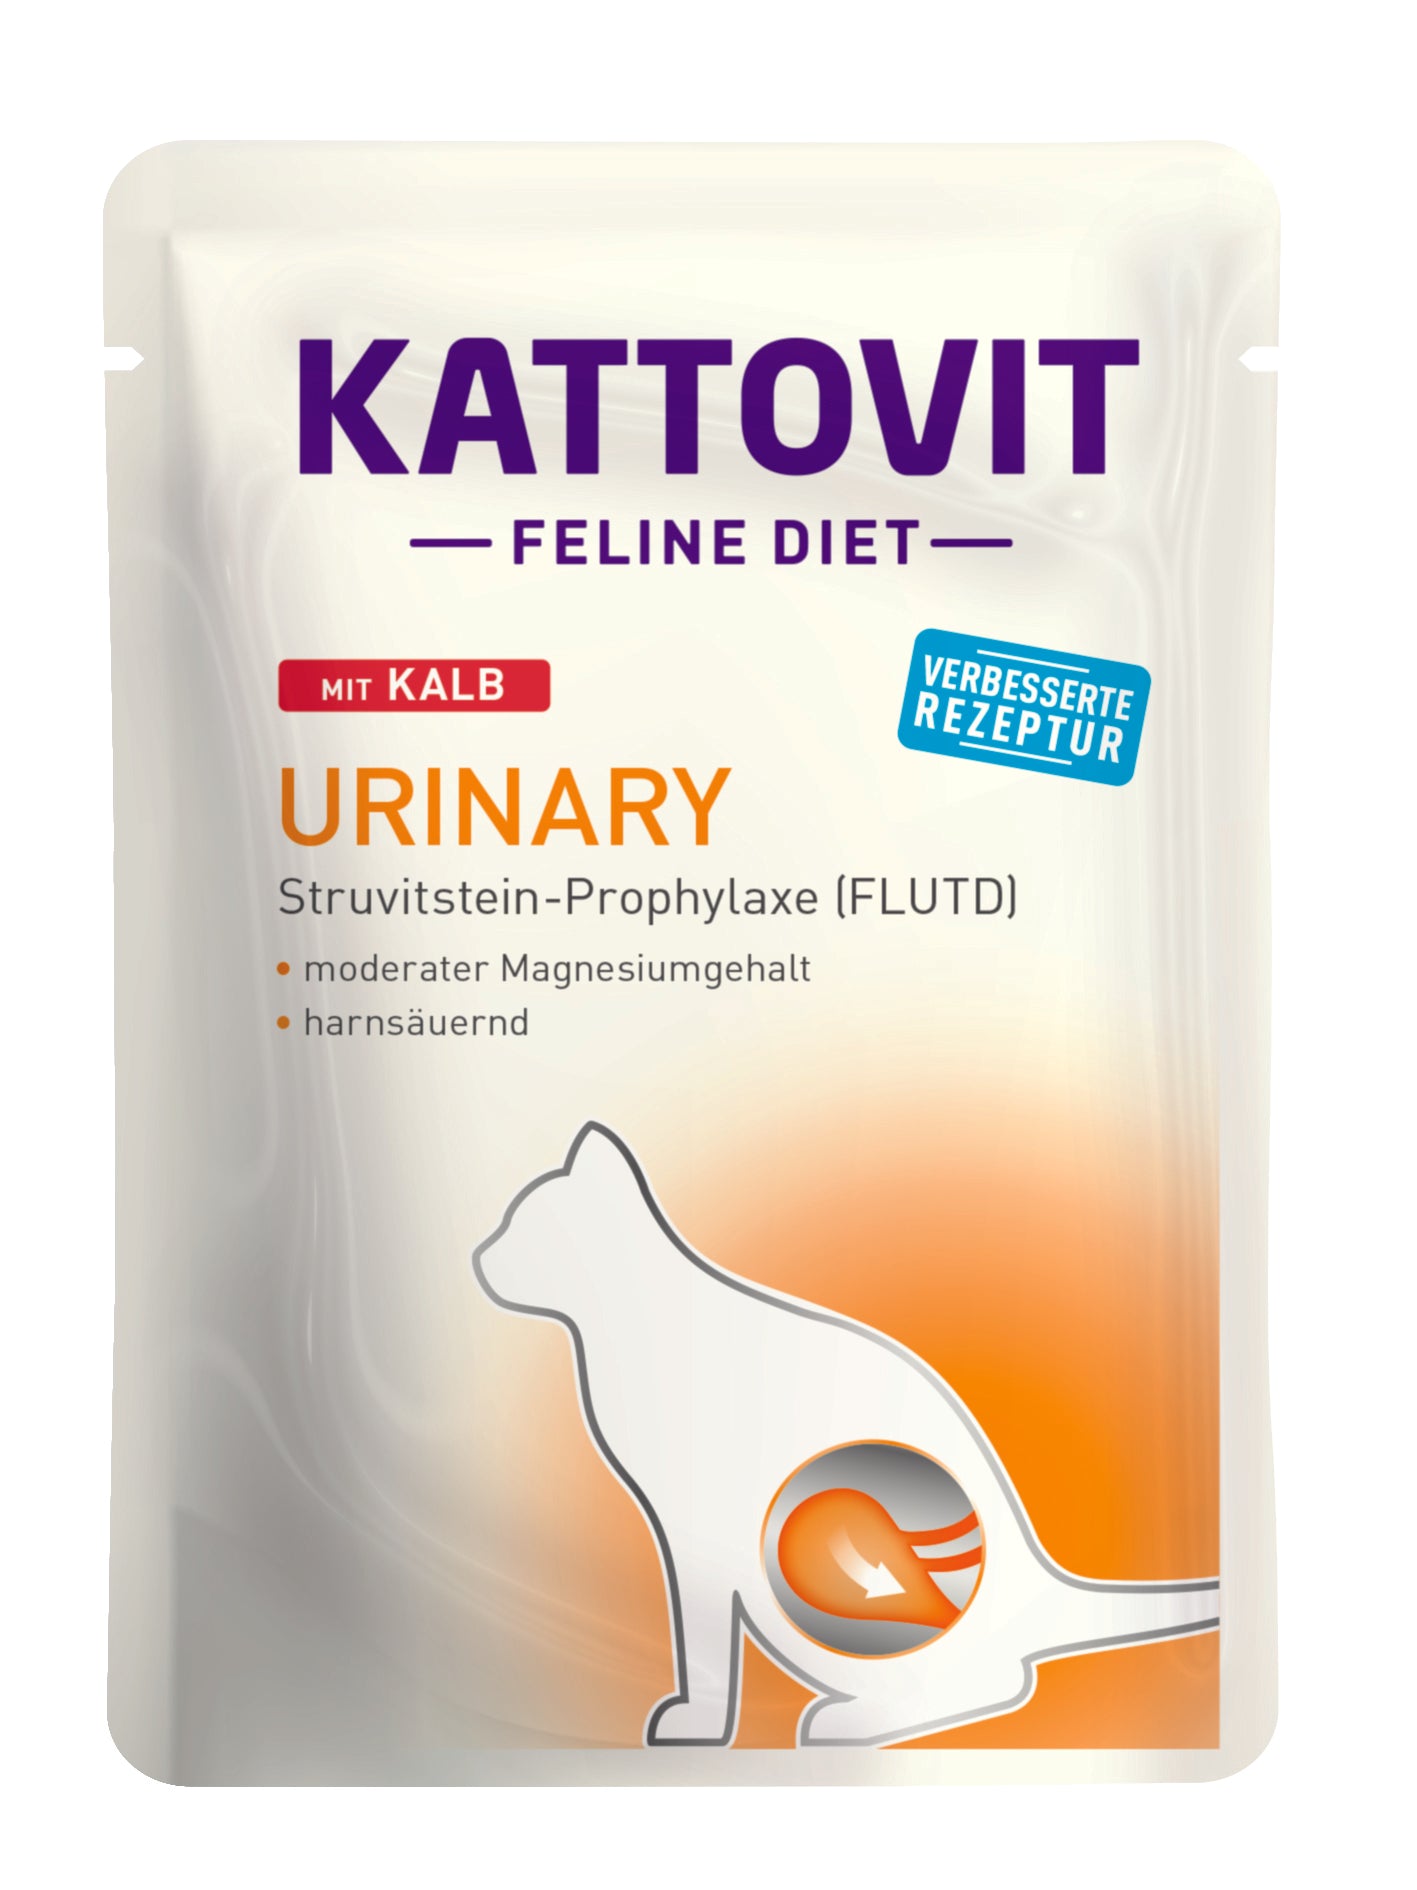 Artikel mit dem Namen Kattovit Feline Diet Urinary mit Kalb im Shop von zoo.de , dem Onlineshop für nachhaltiges Hundefutter und Katzenfutter.